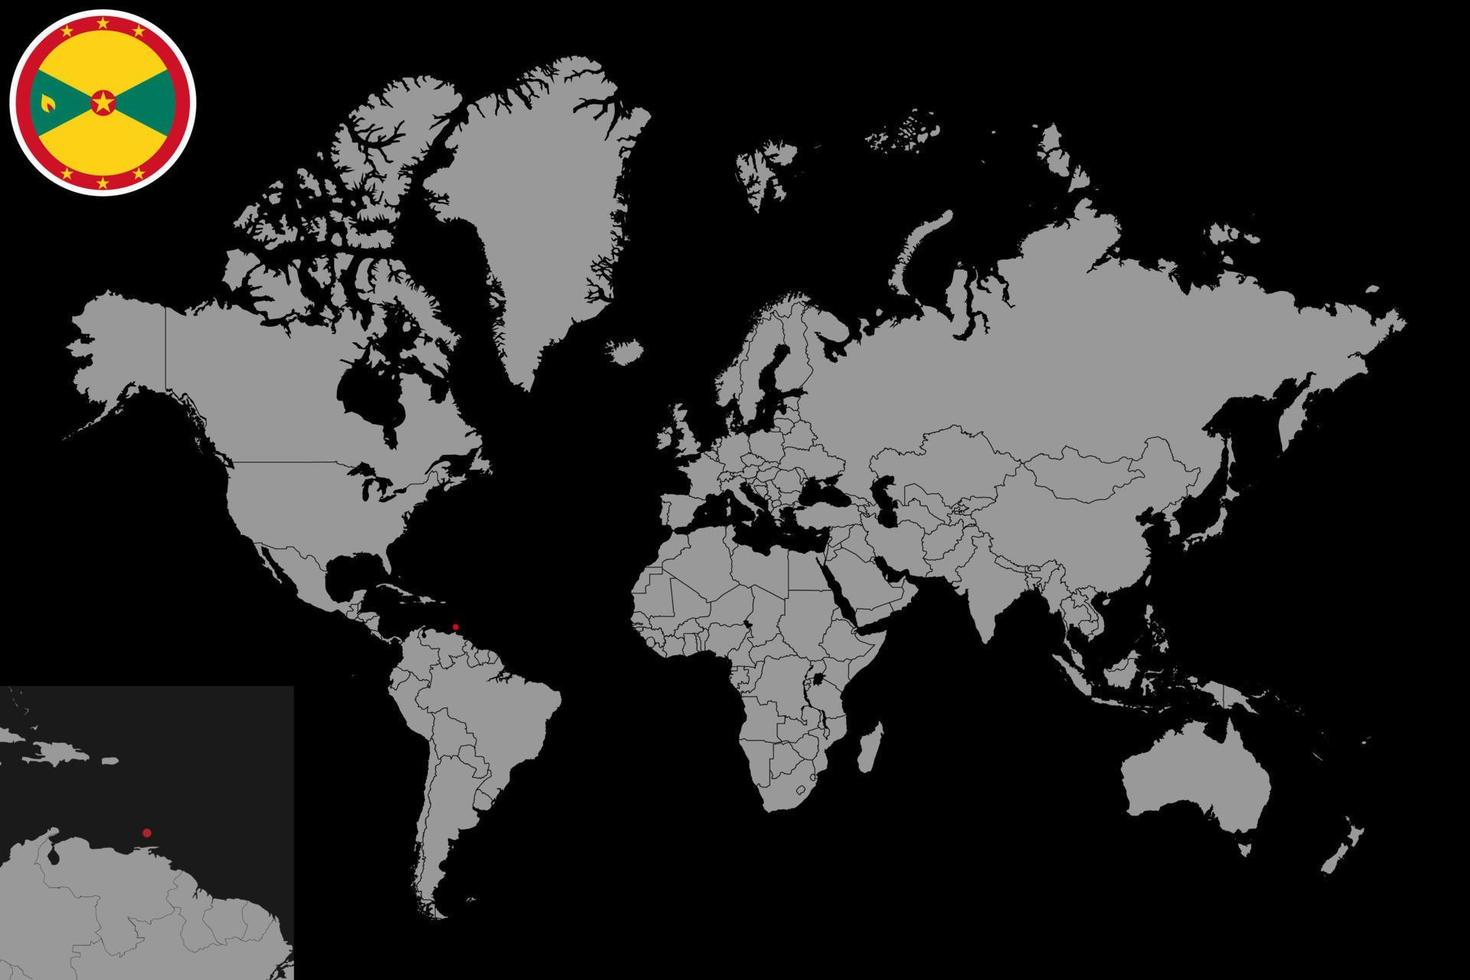 pin mapa con bandera de granada en el mapa mundial. ilustración vectorial vector